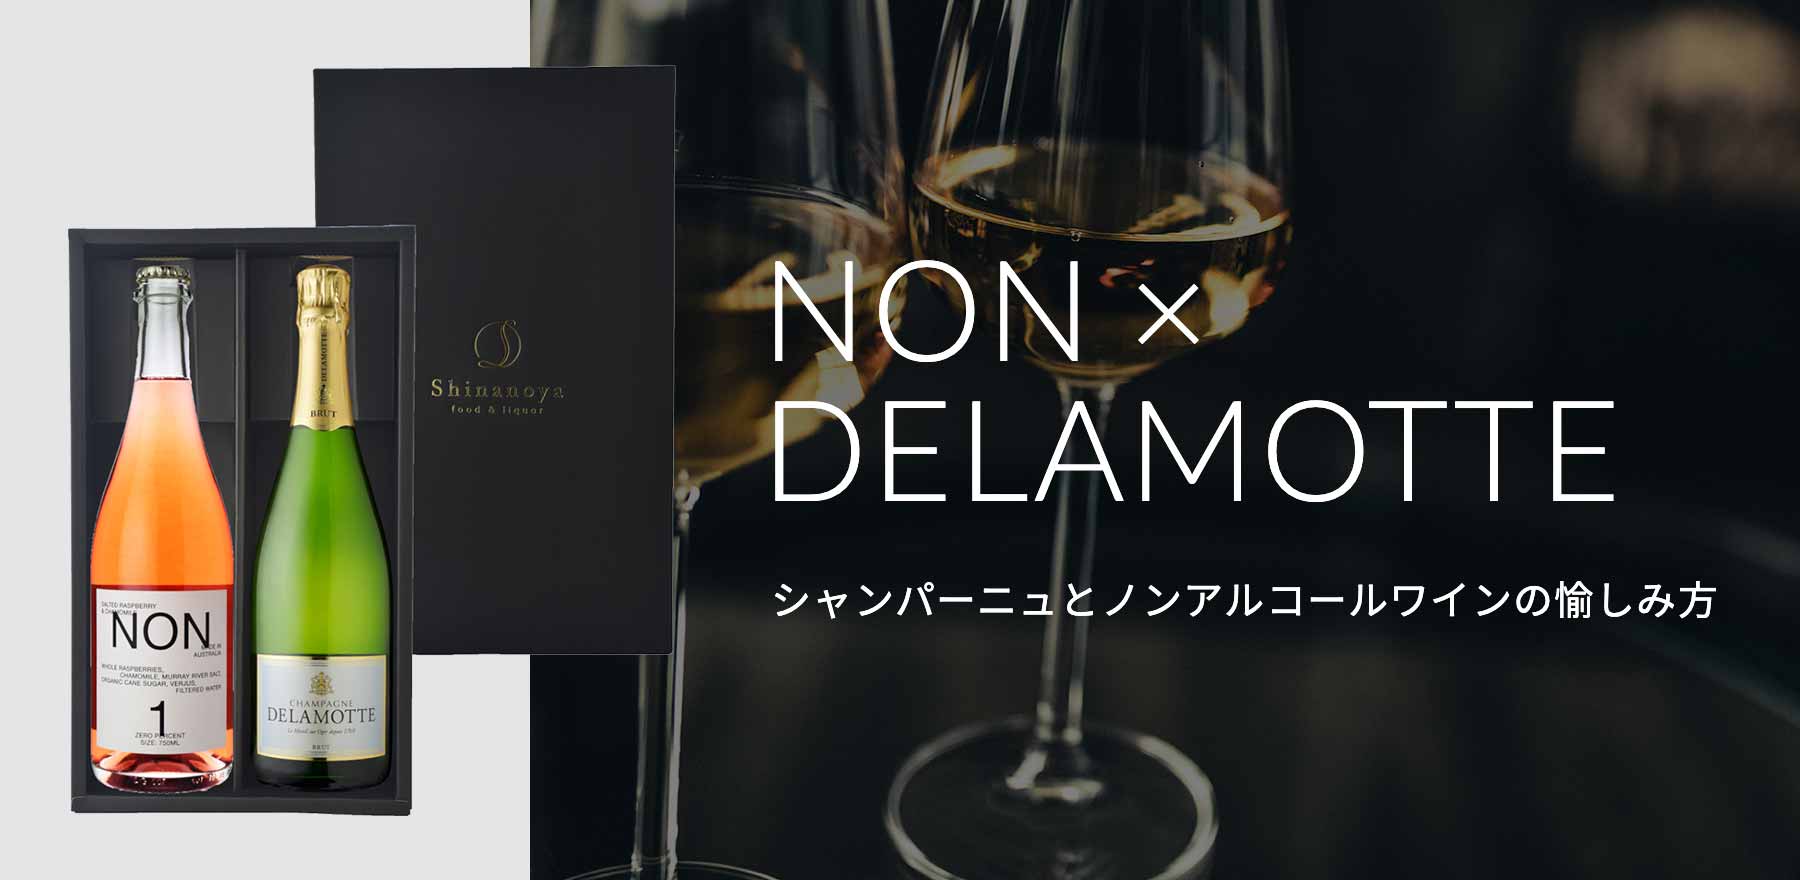 NON × DELAMOTTE シャンパーニュとノンアルコールワインの愉しみ方